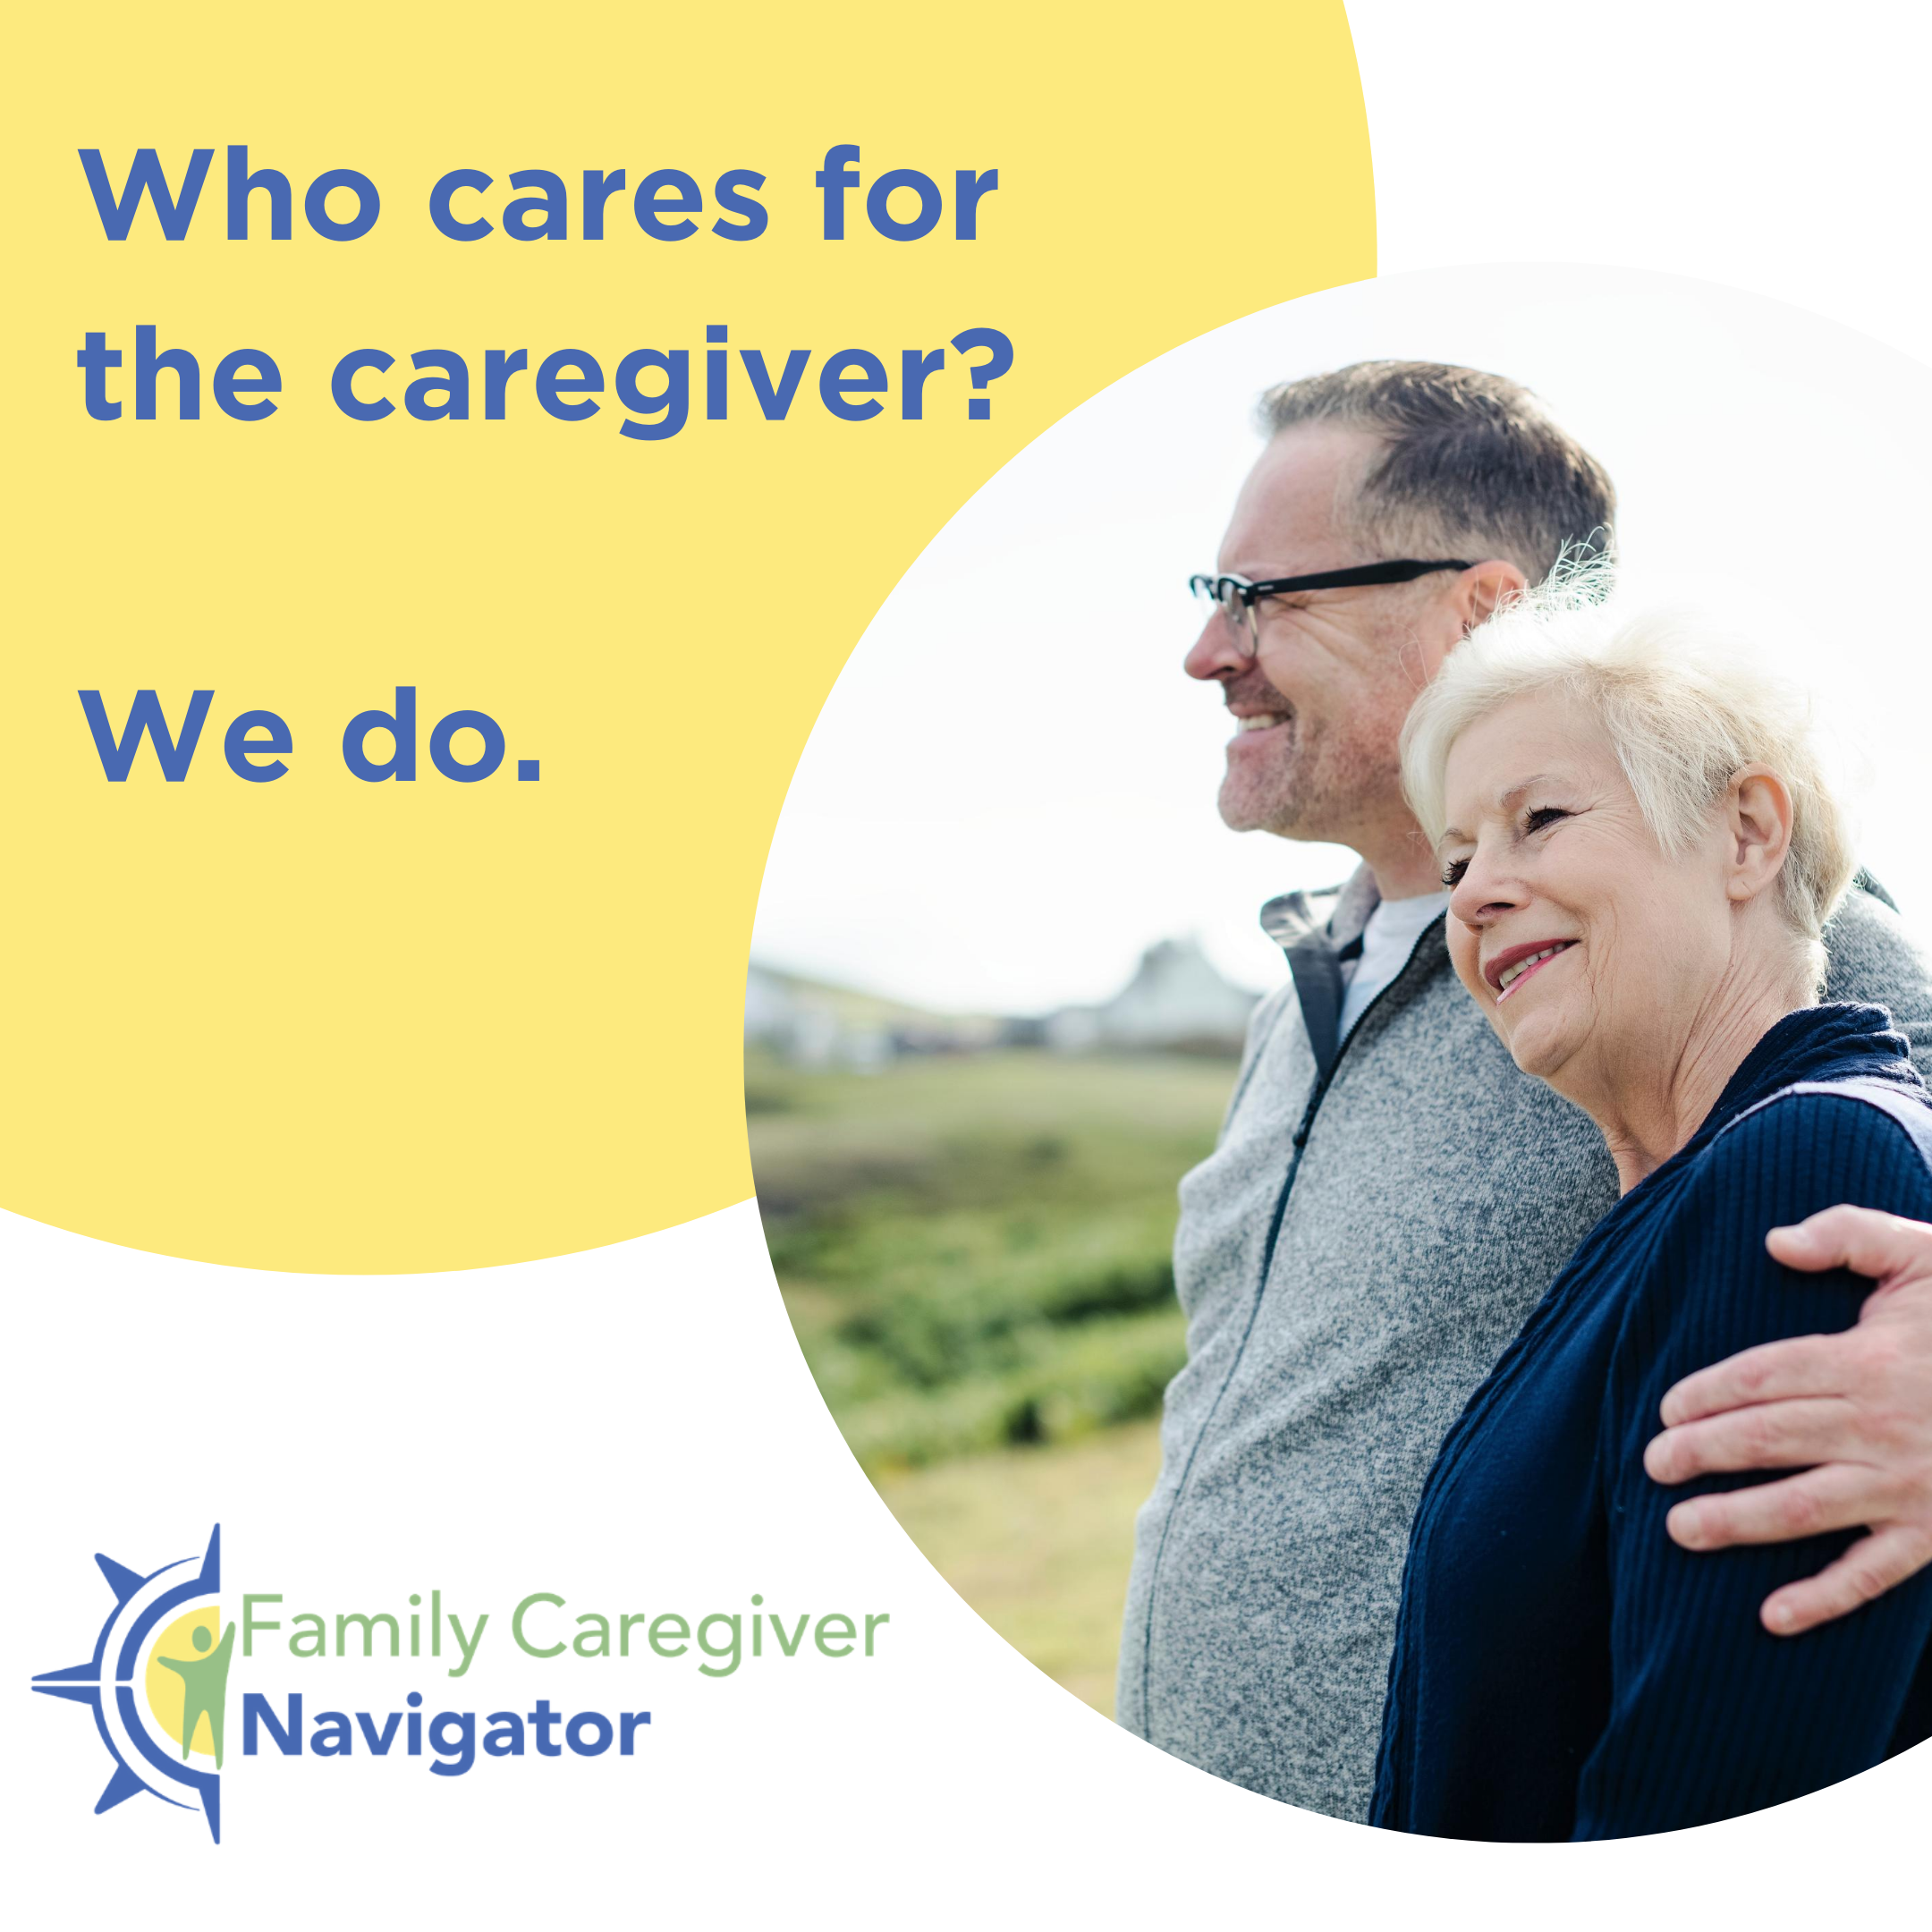 Family Caregiver Navigator